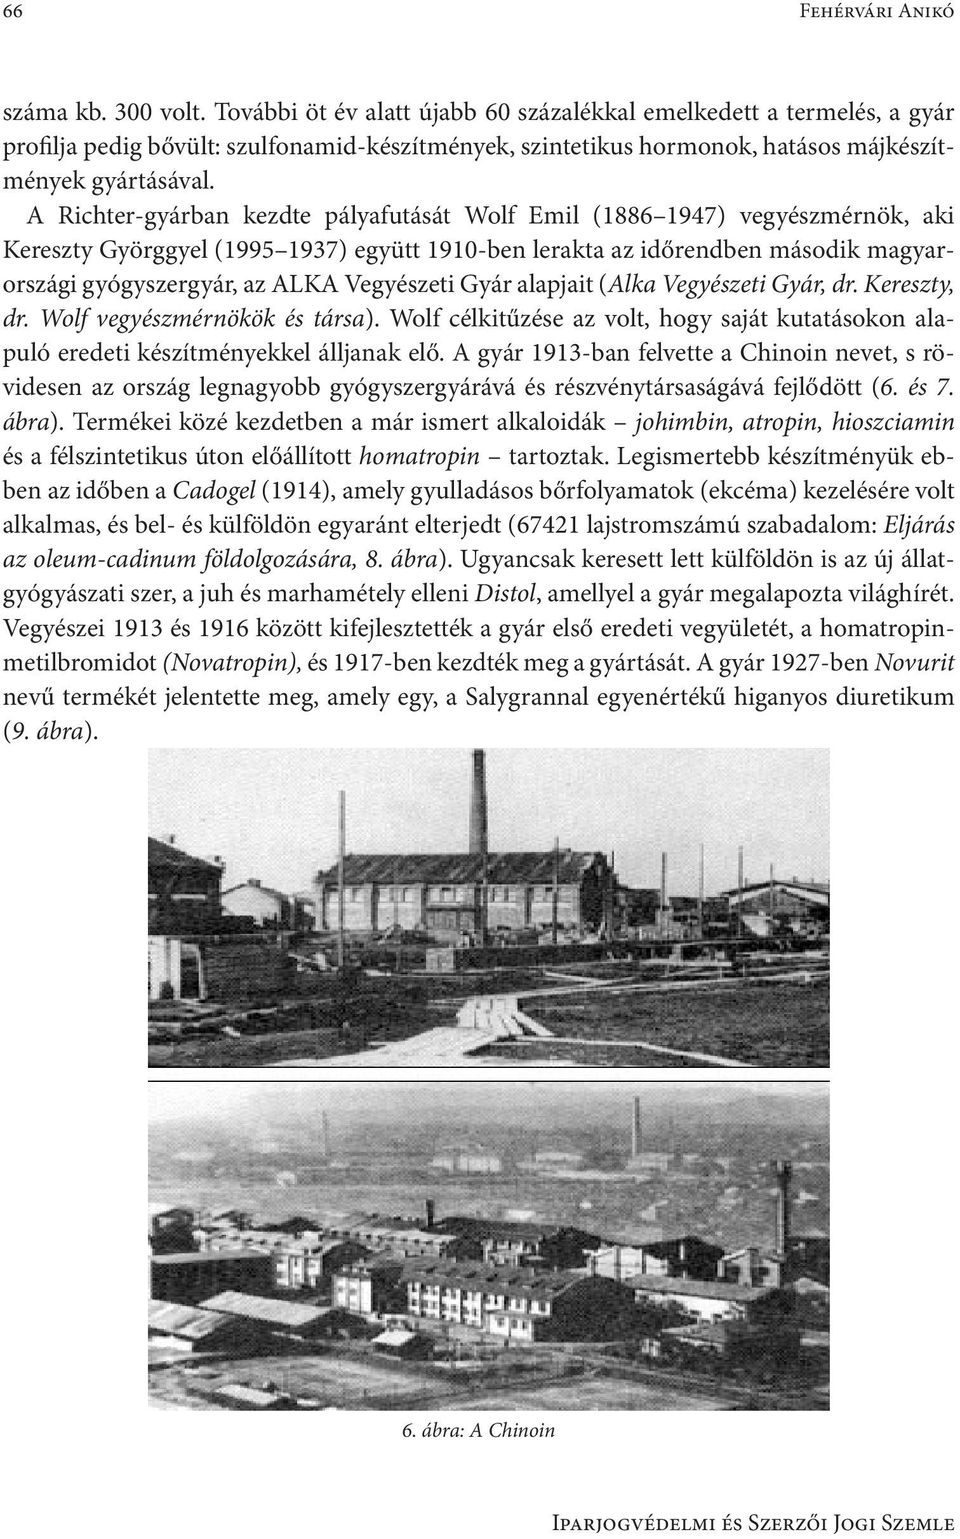 A Richter-gyárban kezdte pályafutását Wolf Emil (1886 1947) vegyészmérnök, aki Kereszty Györggyel (1995 1937) együtt 1910-ben lerakta az időrendben második magyarországi gyógyszergyár, az ALKA